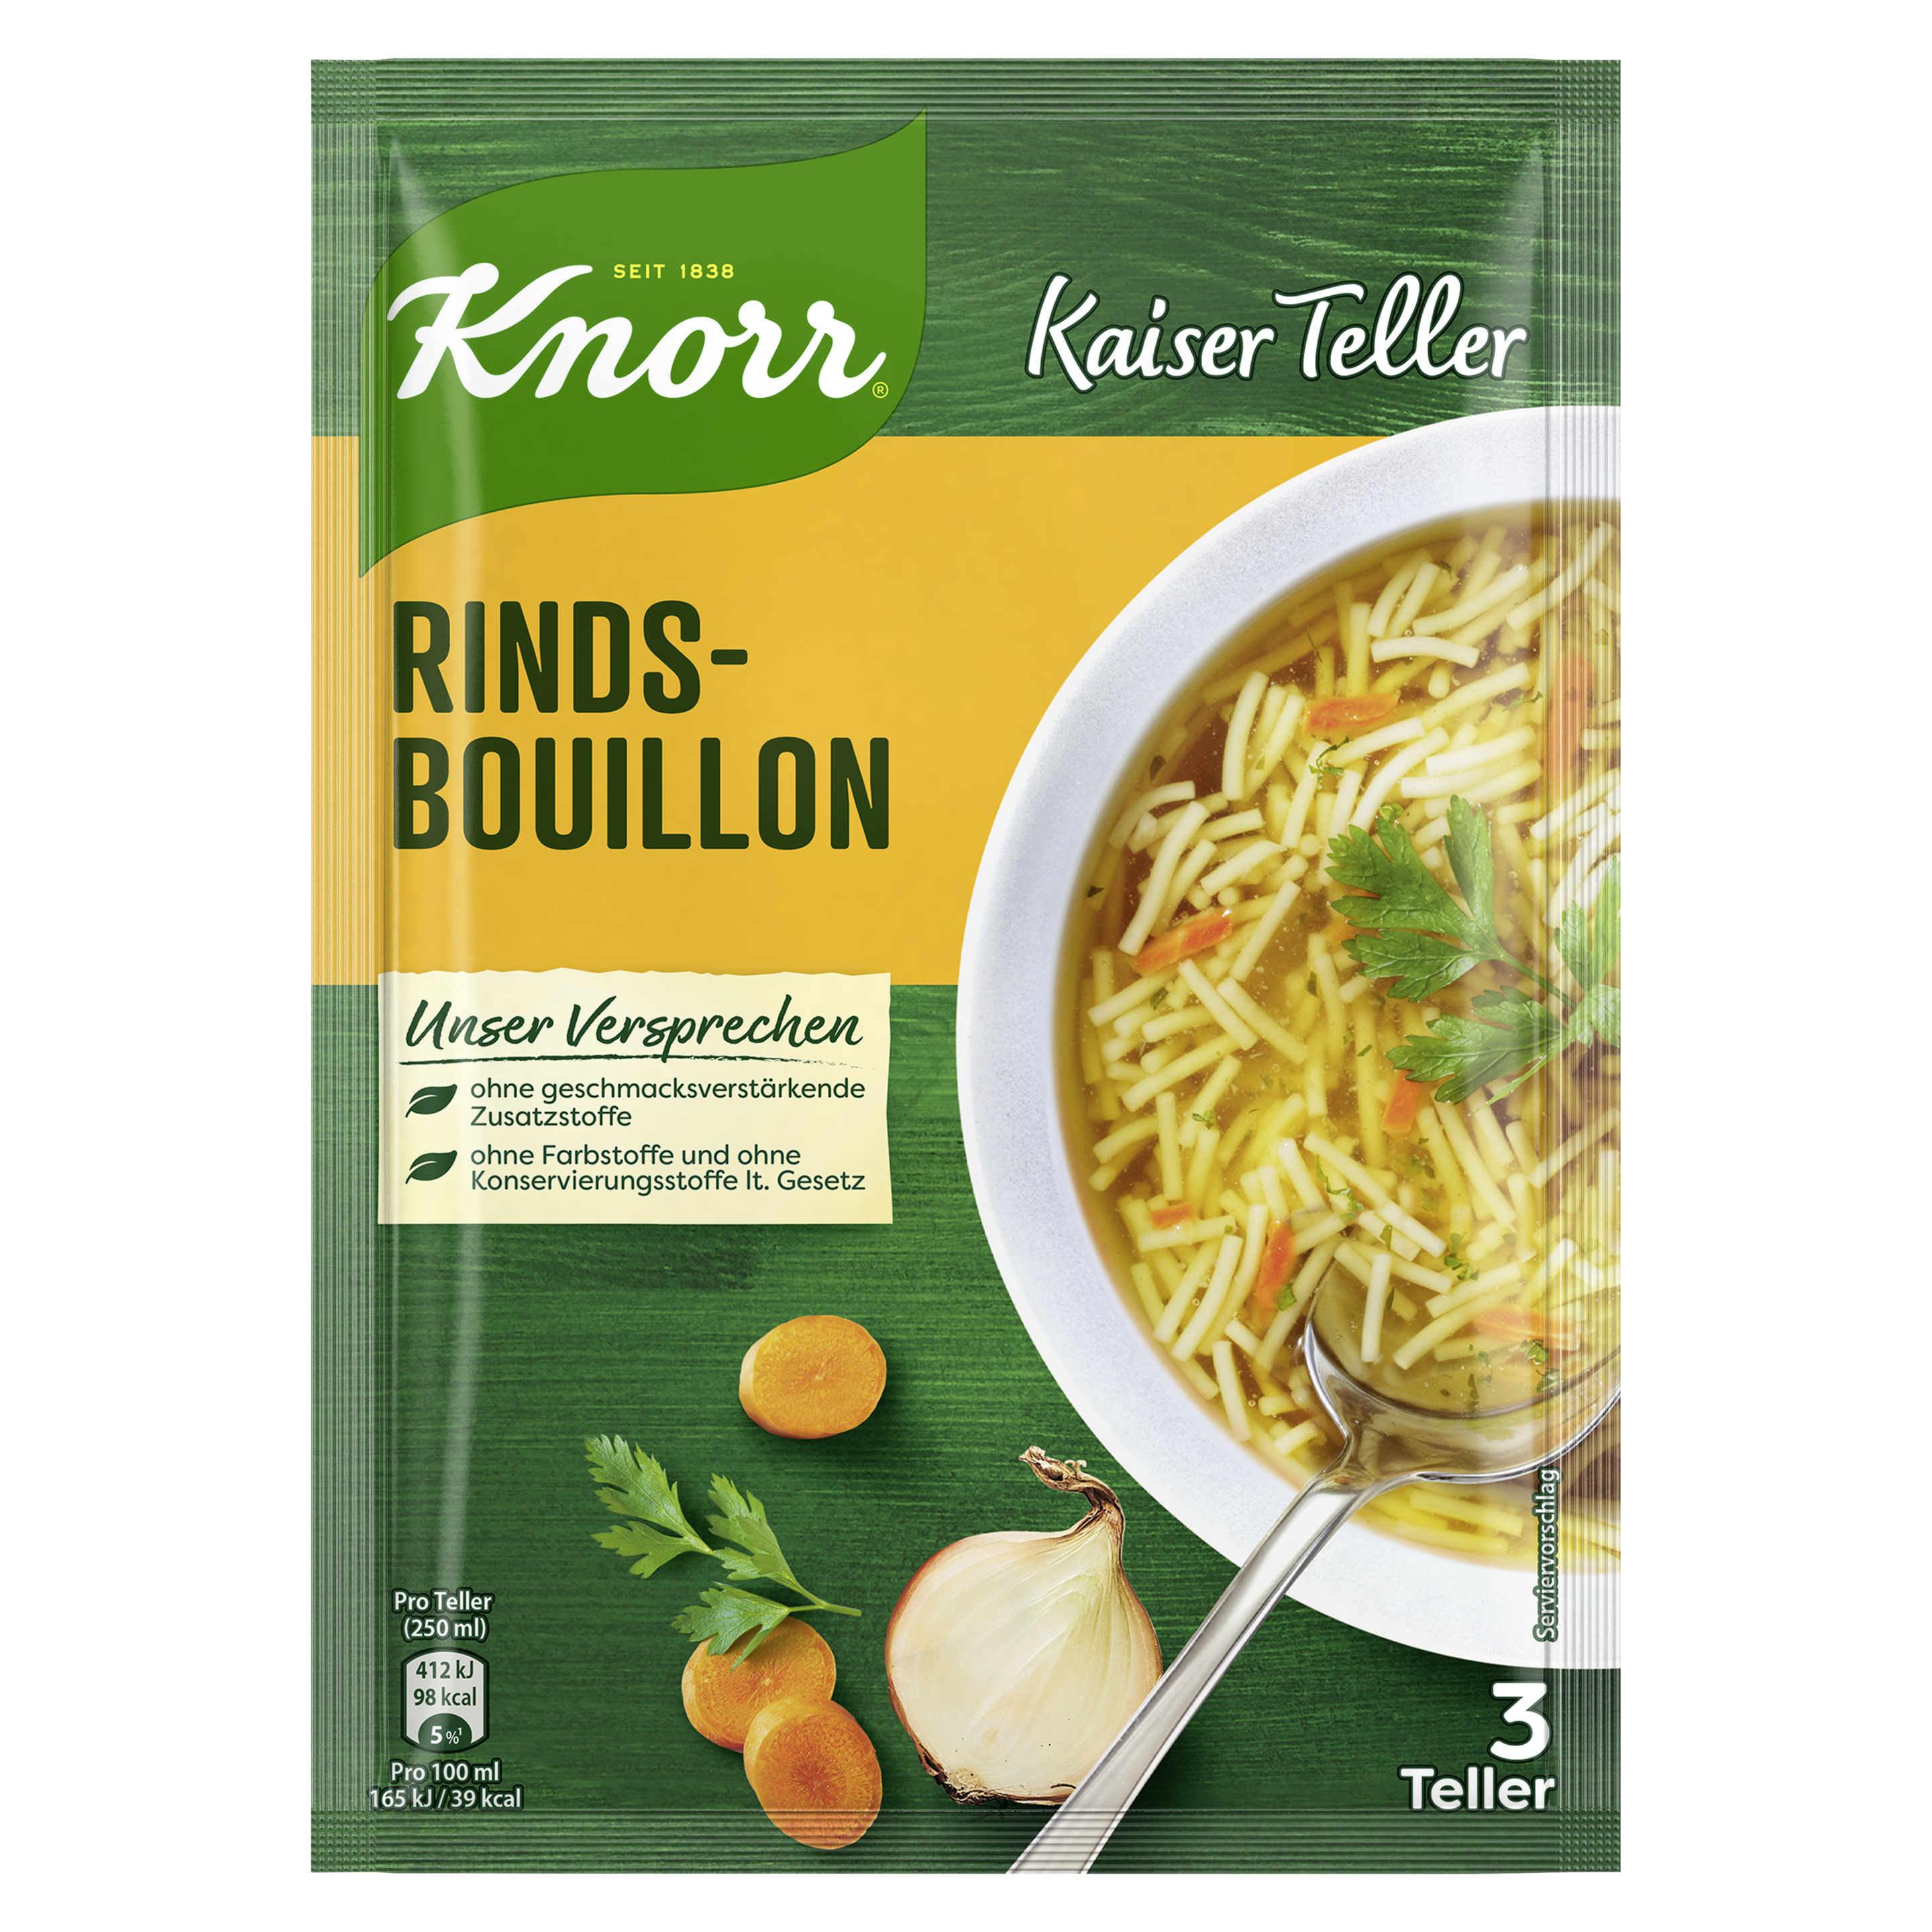 Knorr Kaiser Teller Rindsbouillon mit Eiernudeln Suppe 3 Teller